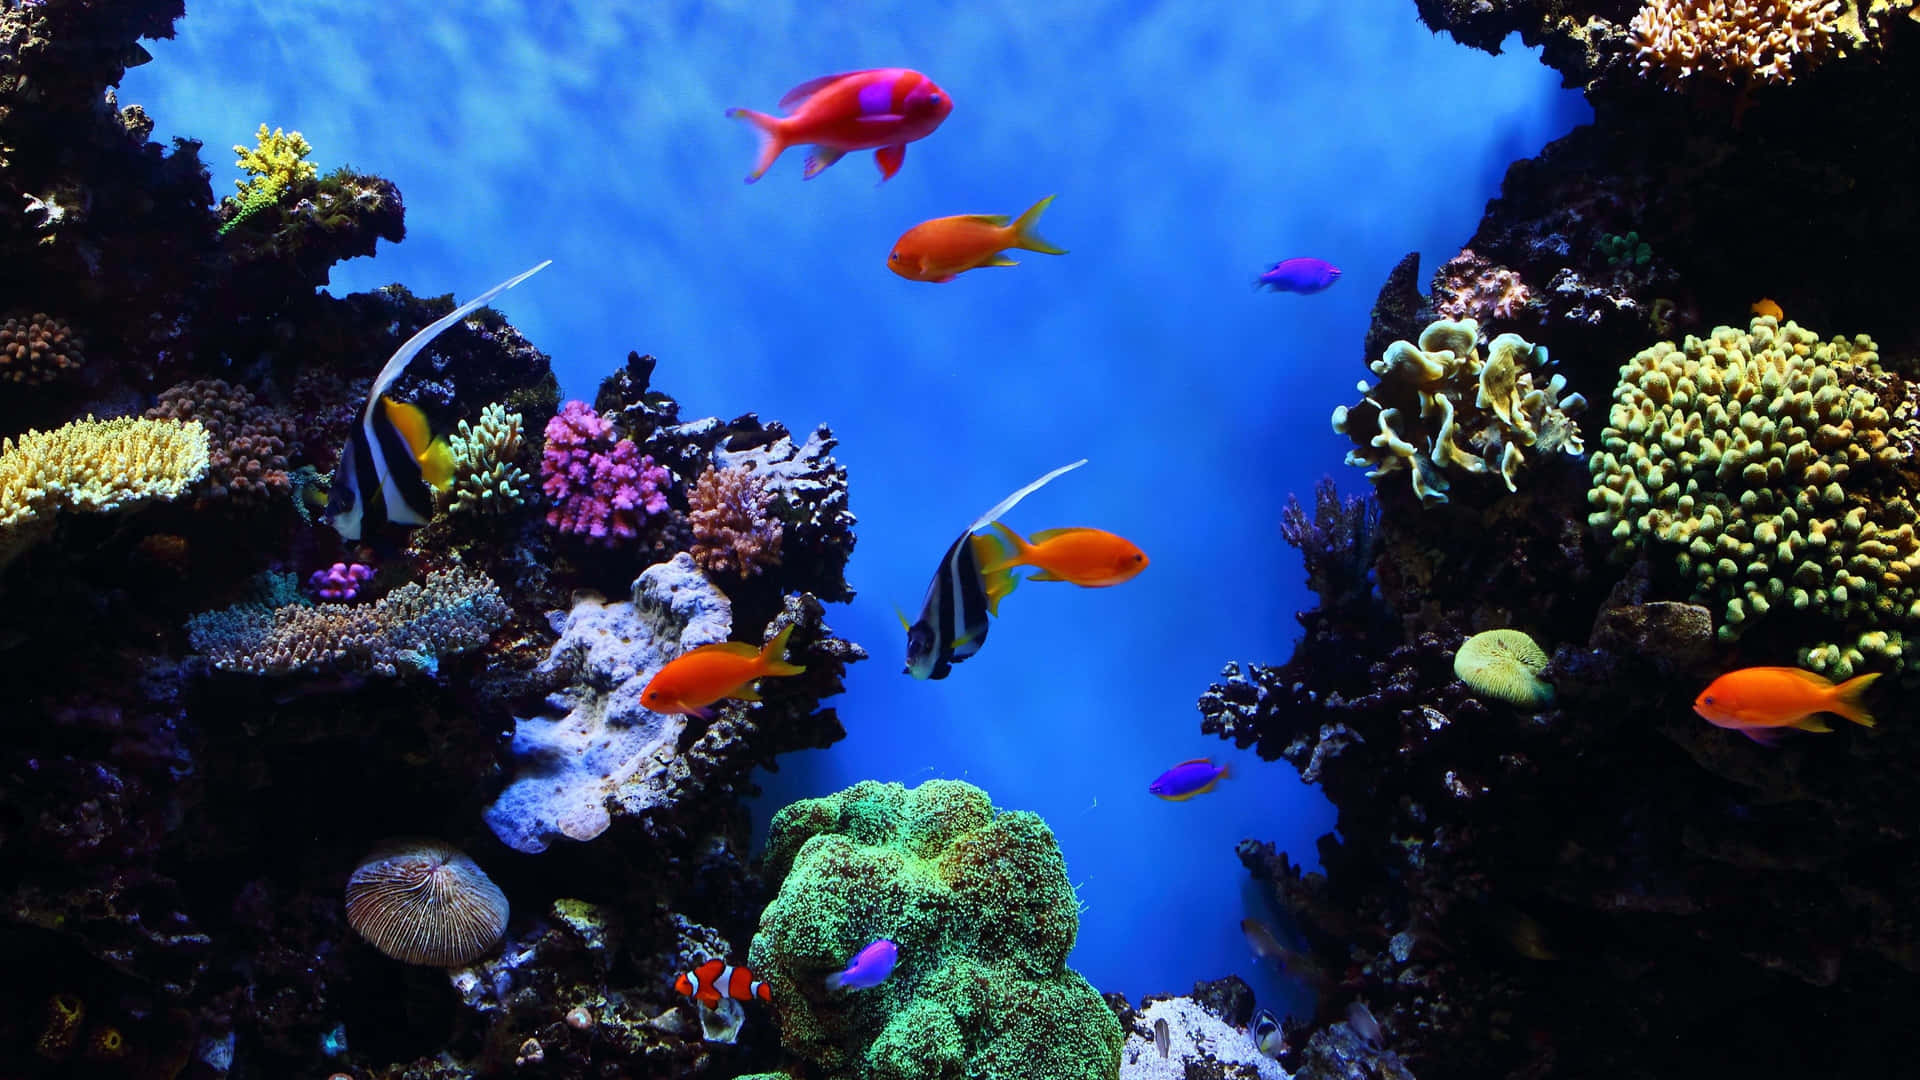 Impresionantepaisaje De Arrecife De Coral Rojo